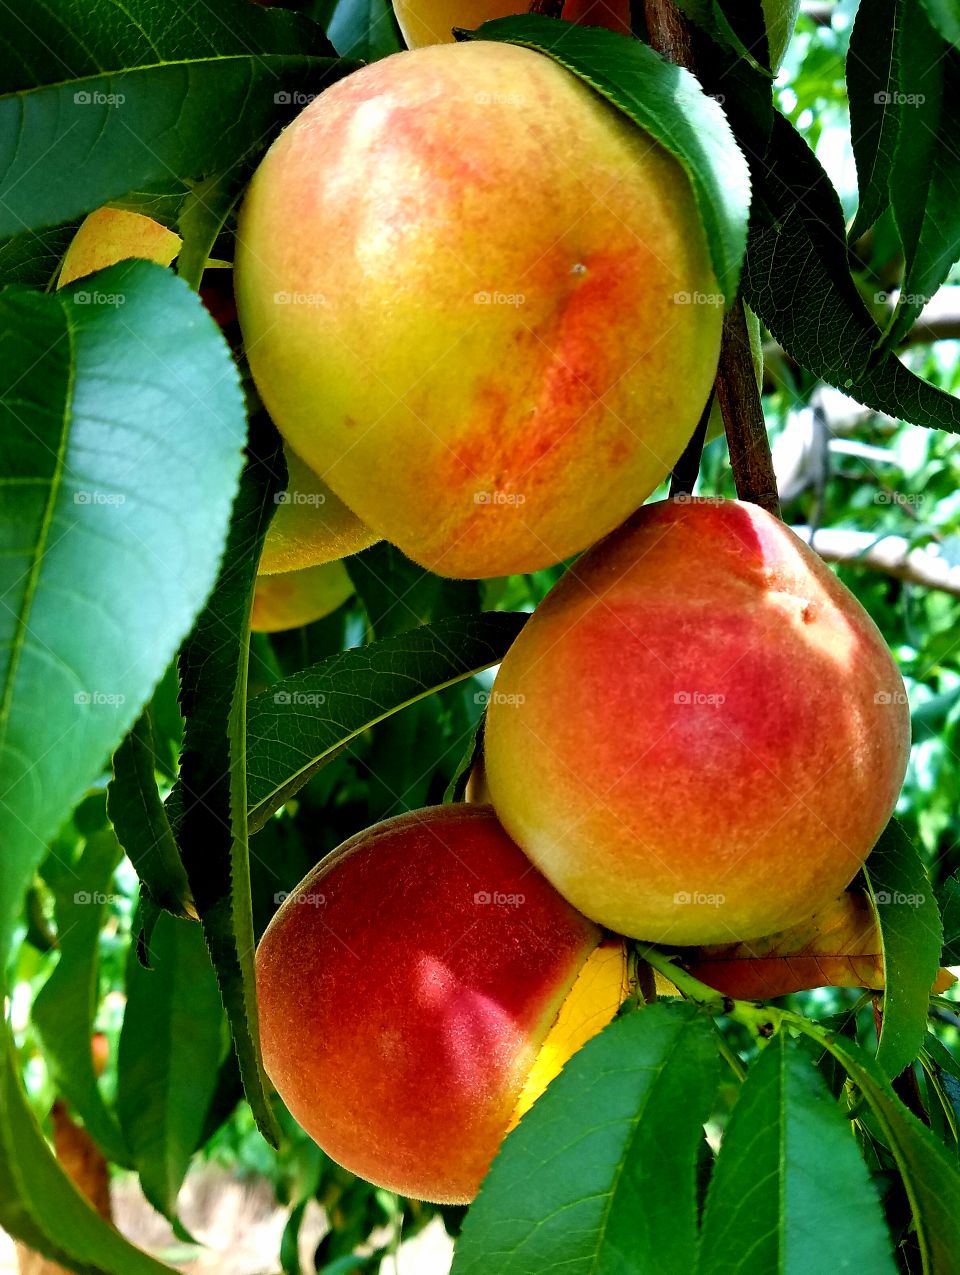 Virginia Peaches